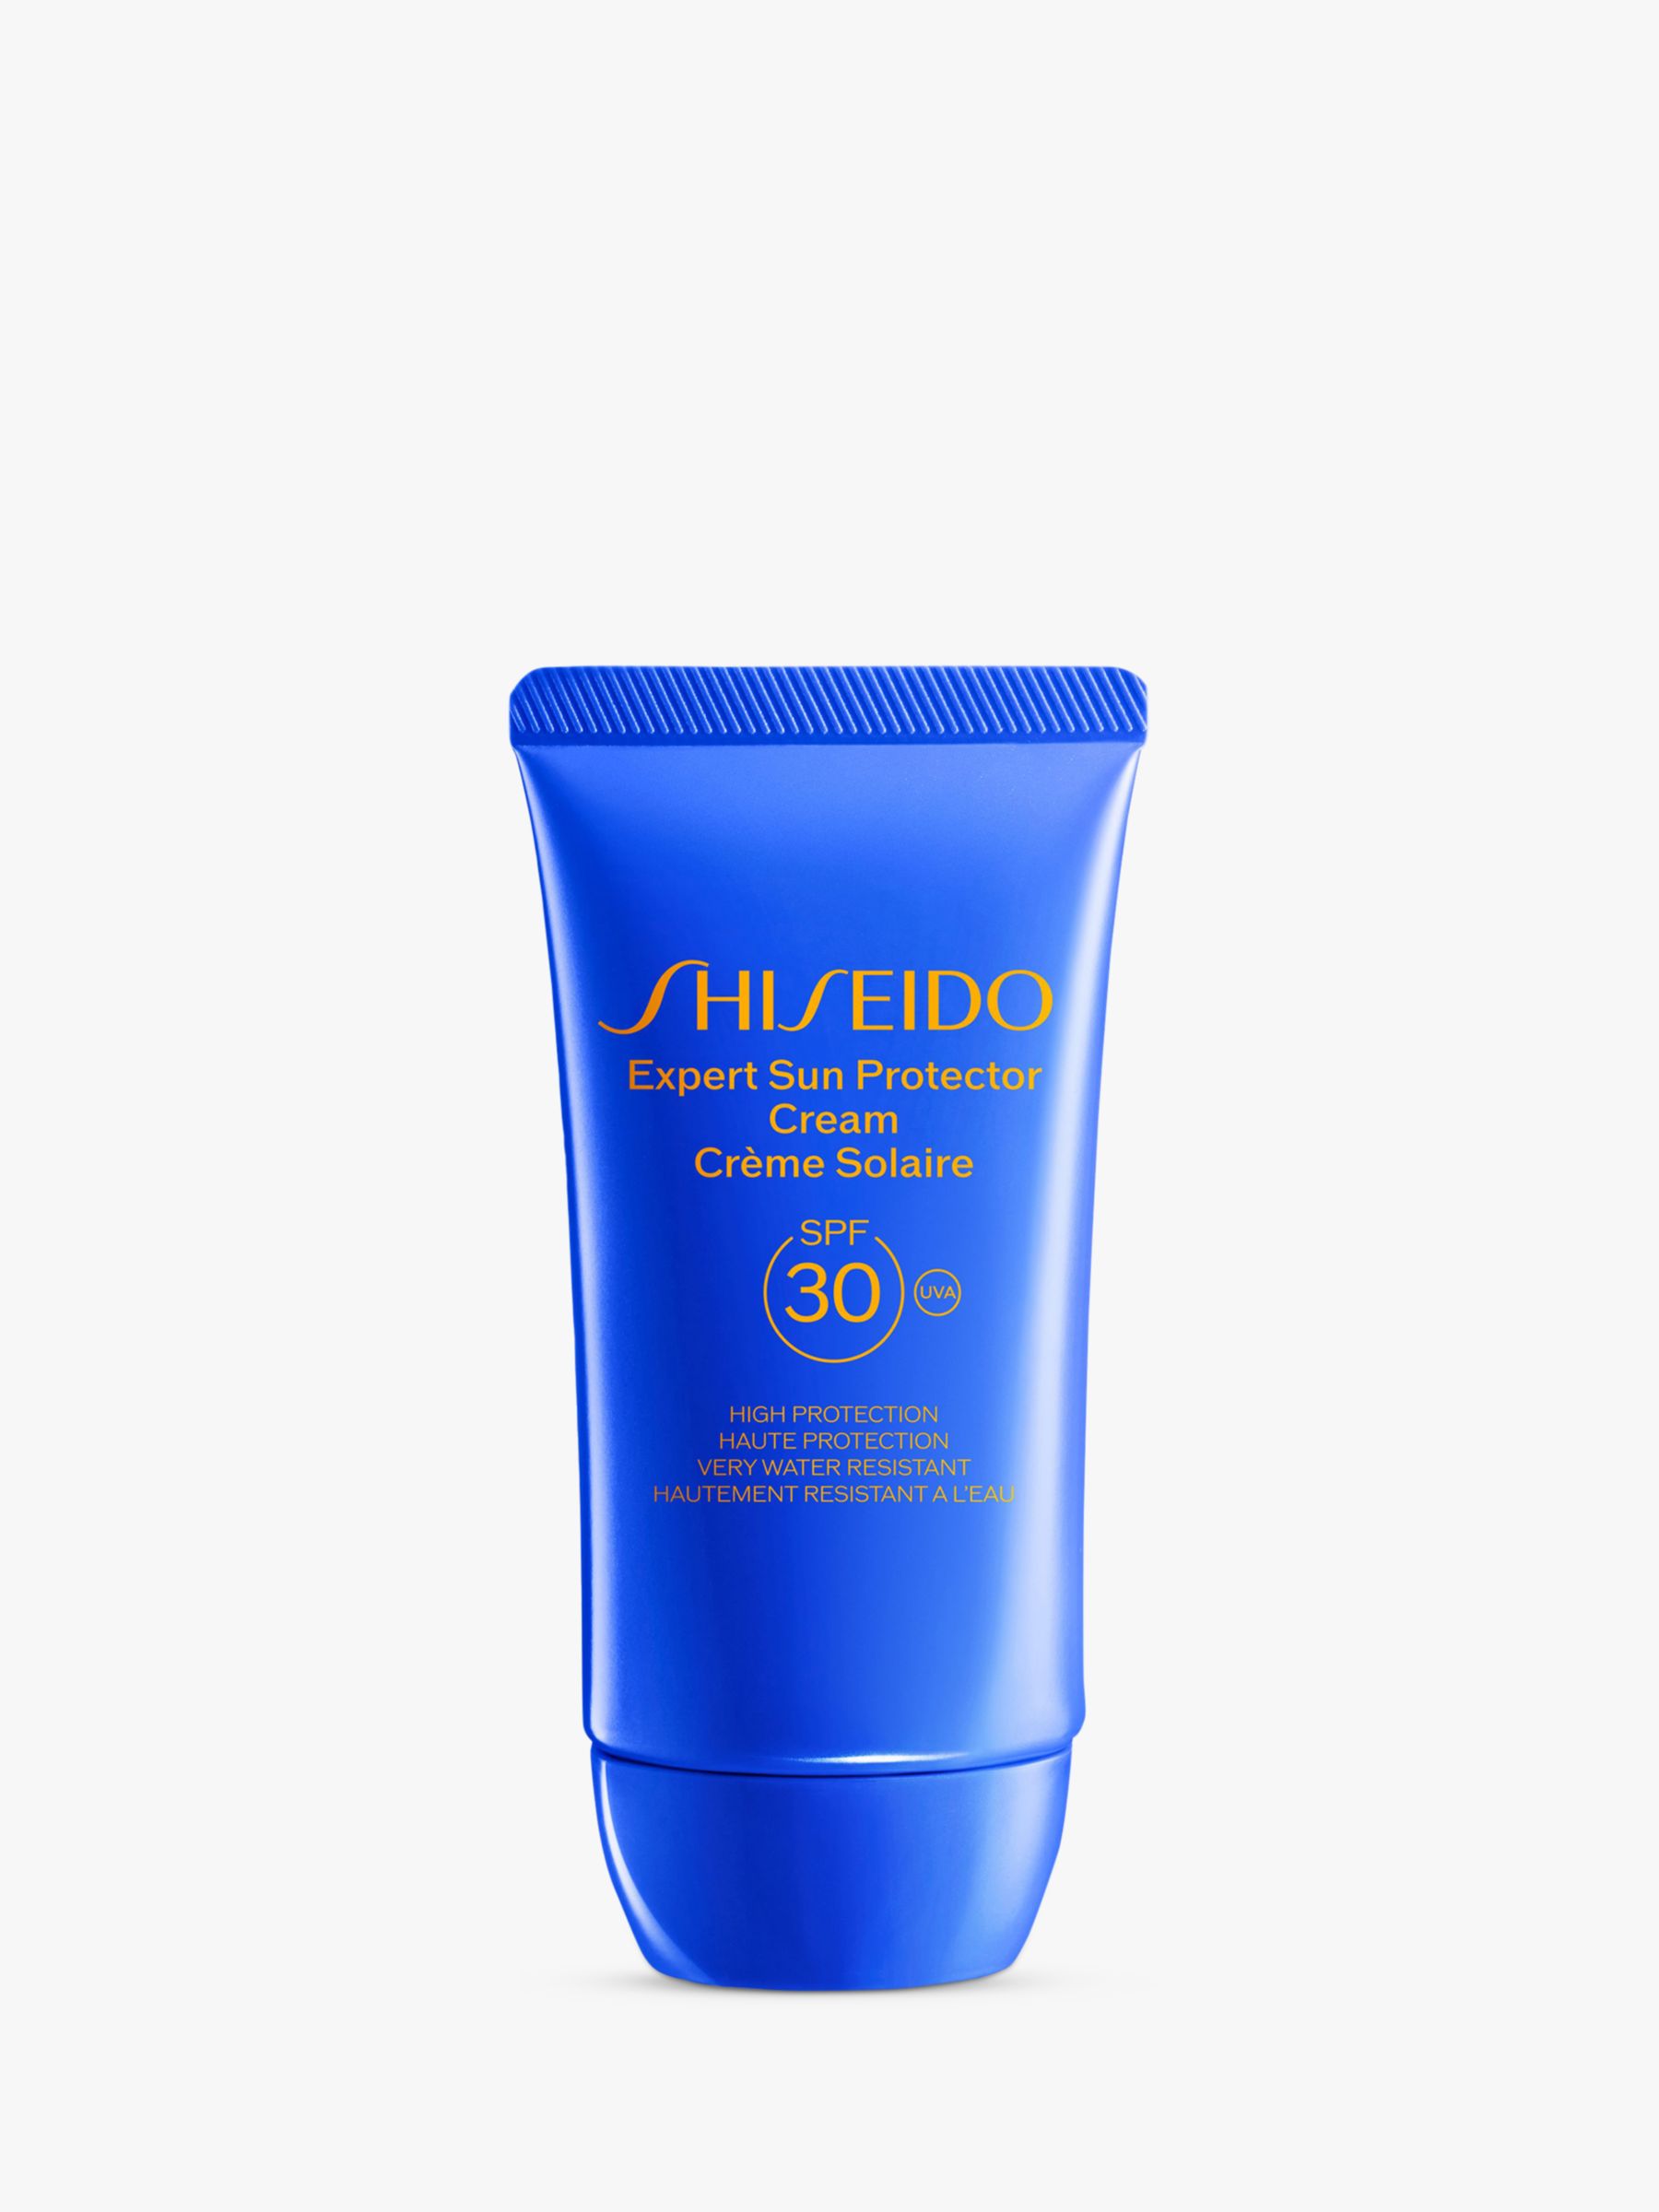 Shiseido Expert Sun Protector Cream SPF 30, 50ml 1